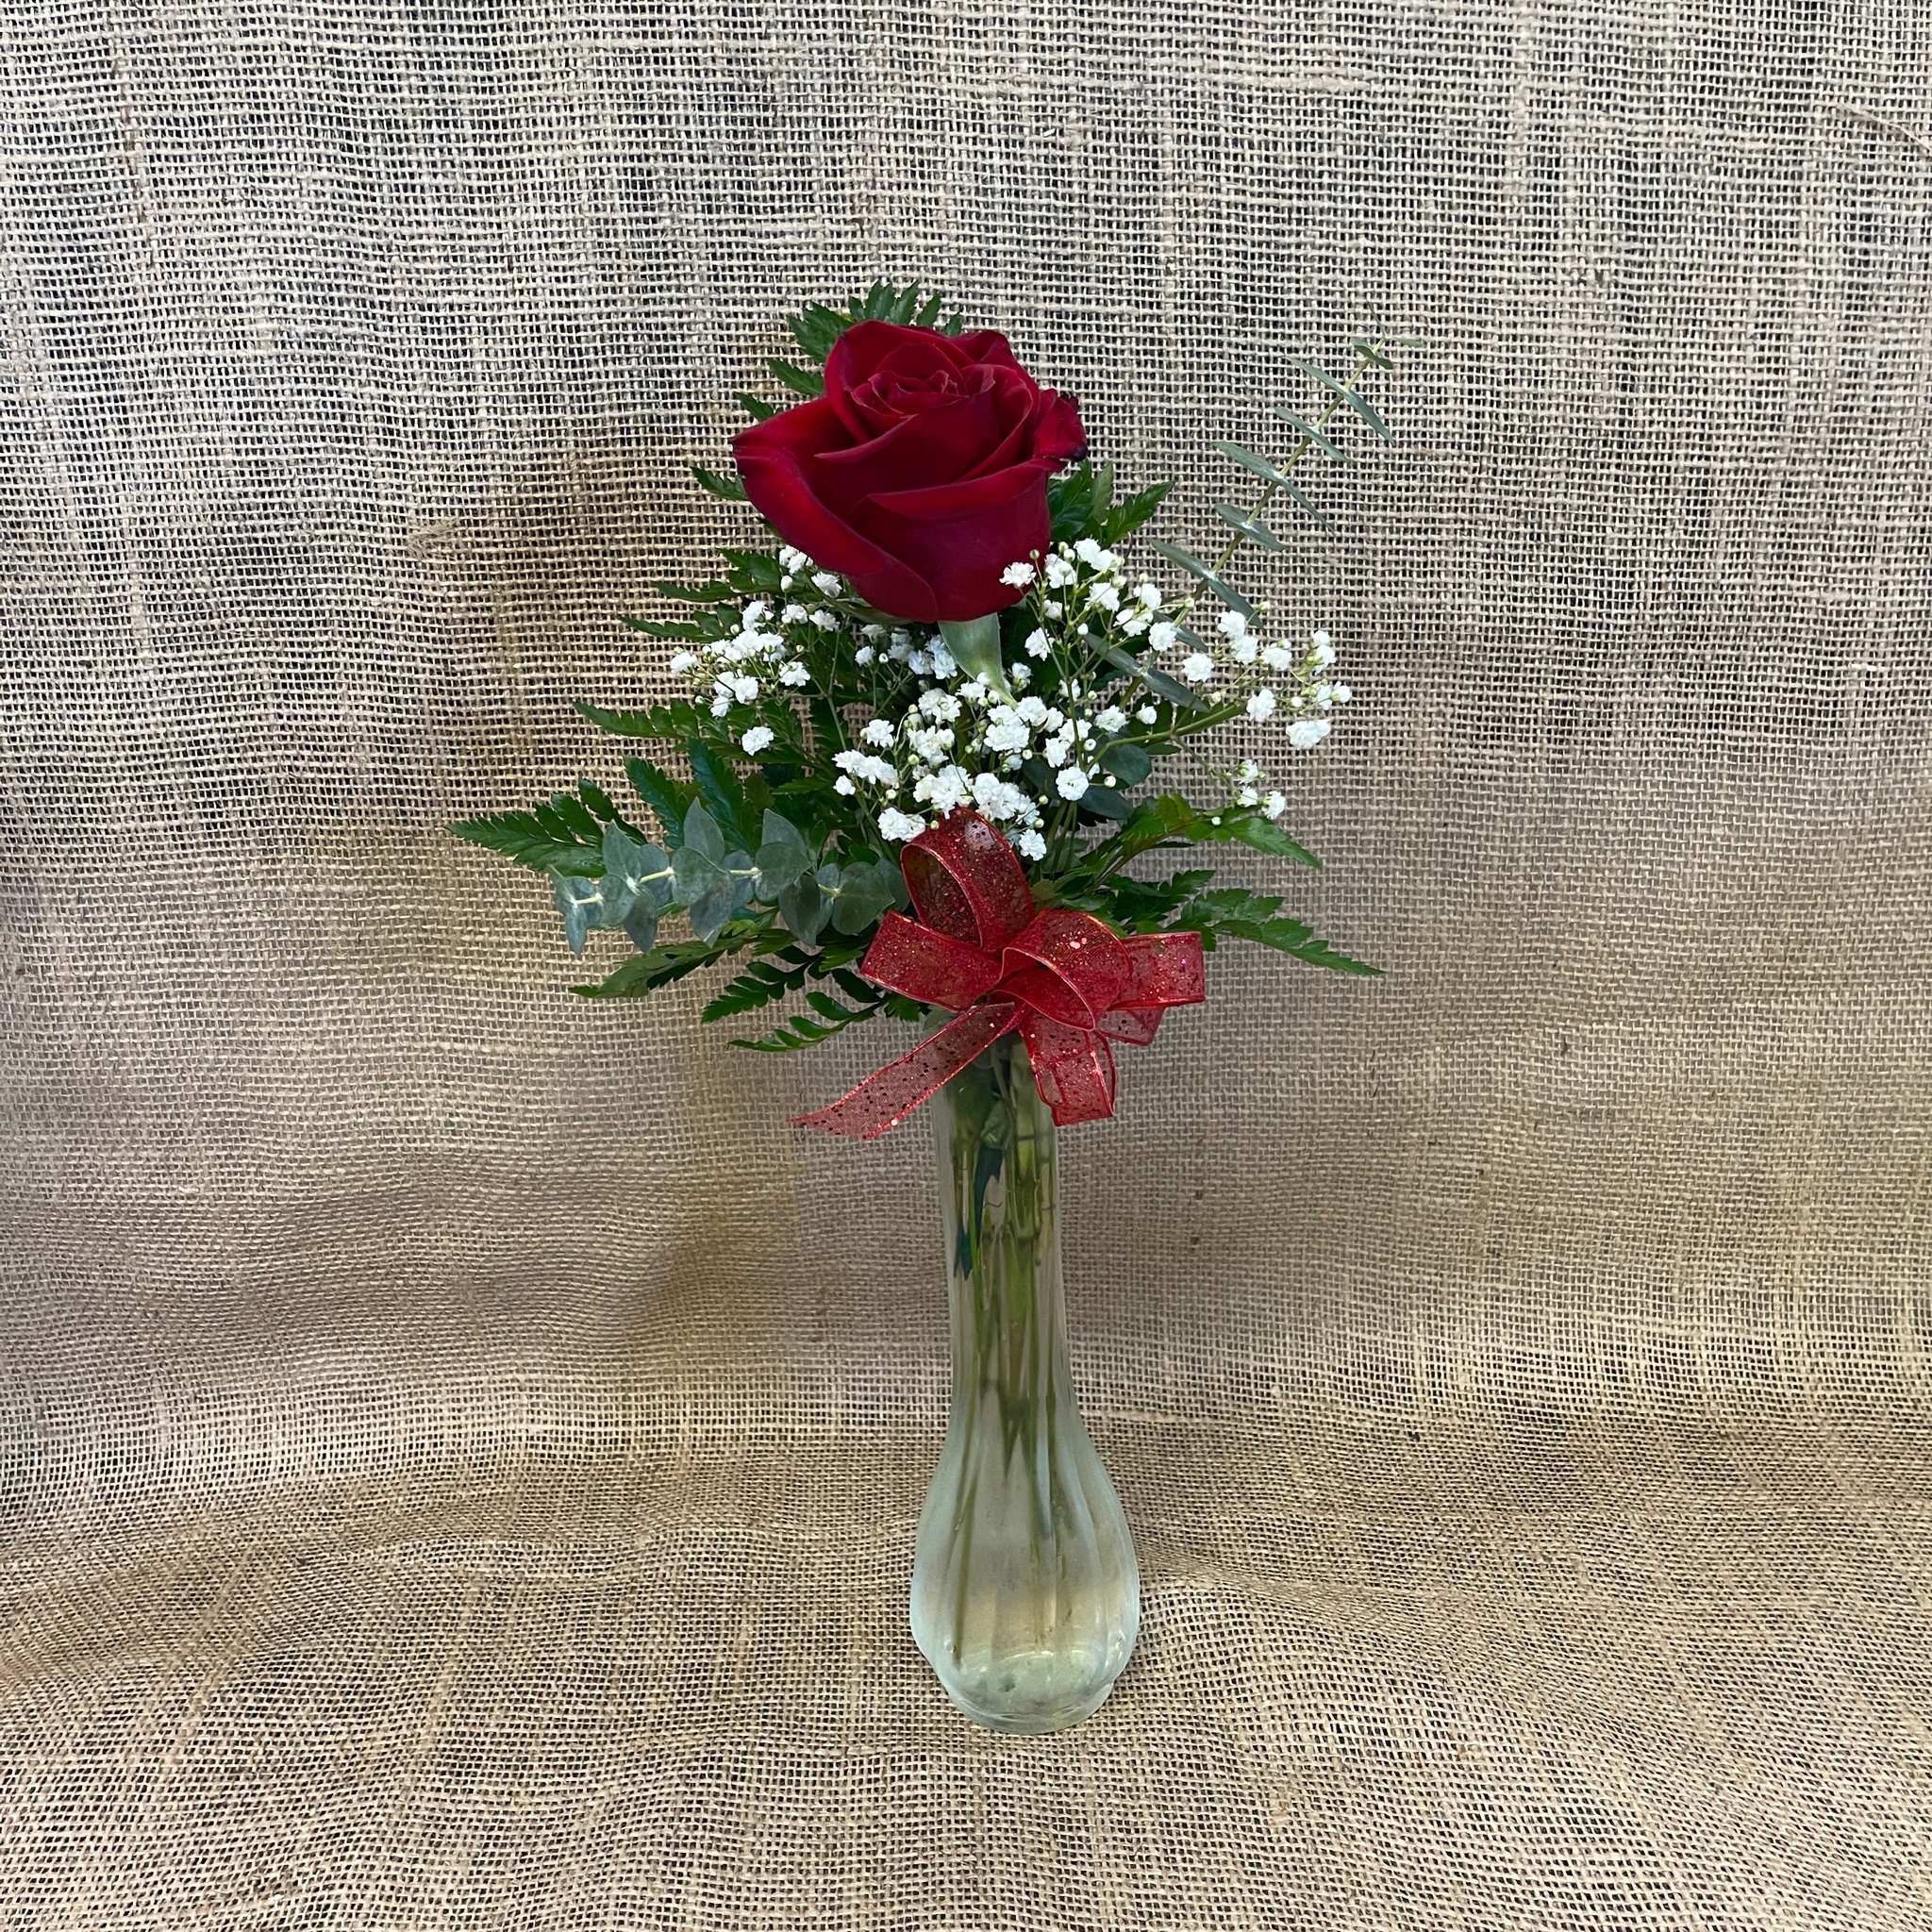 Premium Rose Bud Vase #VA30AA • Canada Flowers